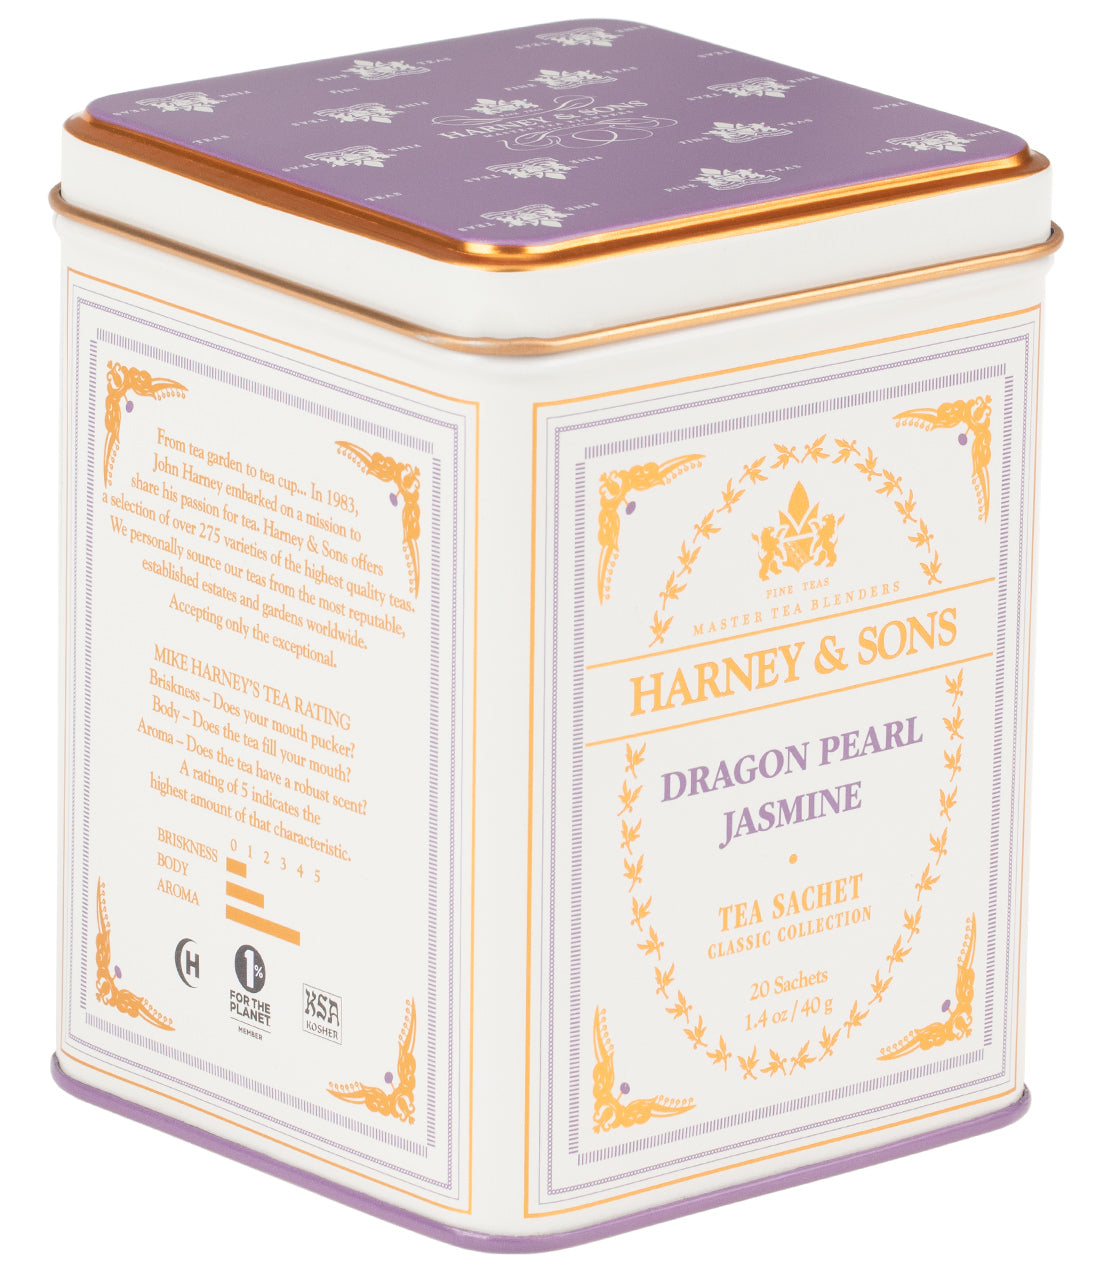 Dragon Pearl Jasmine - Sachets Classic Tin of 20 Sachets - Harney & Sons Fine Teas